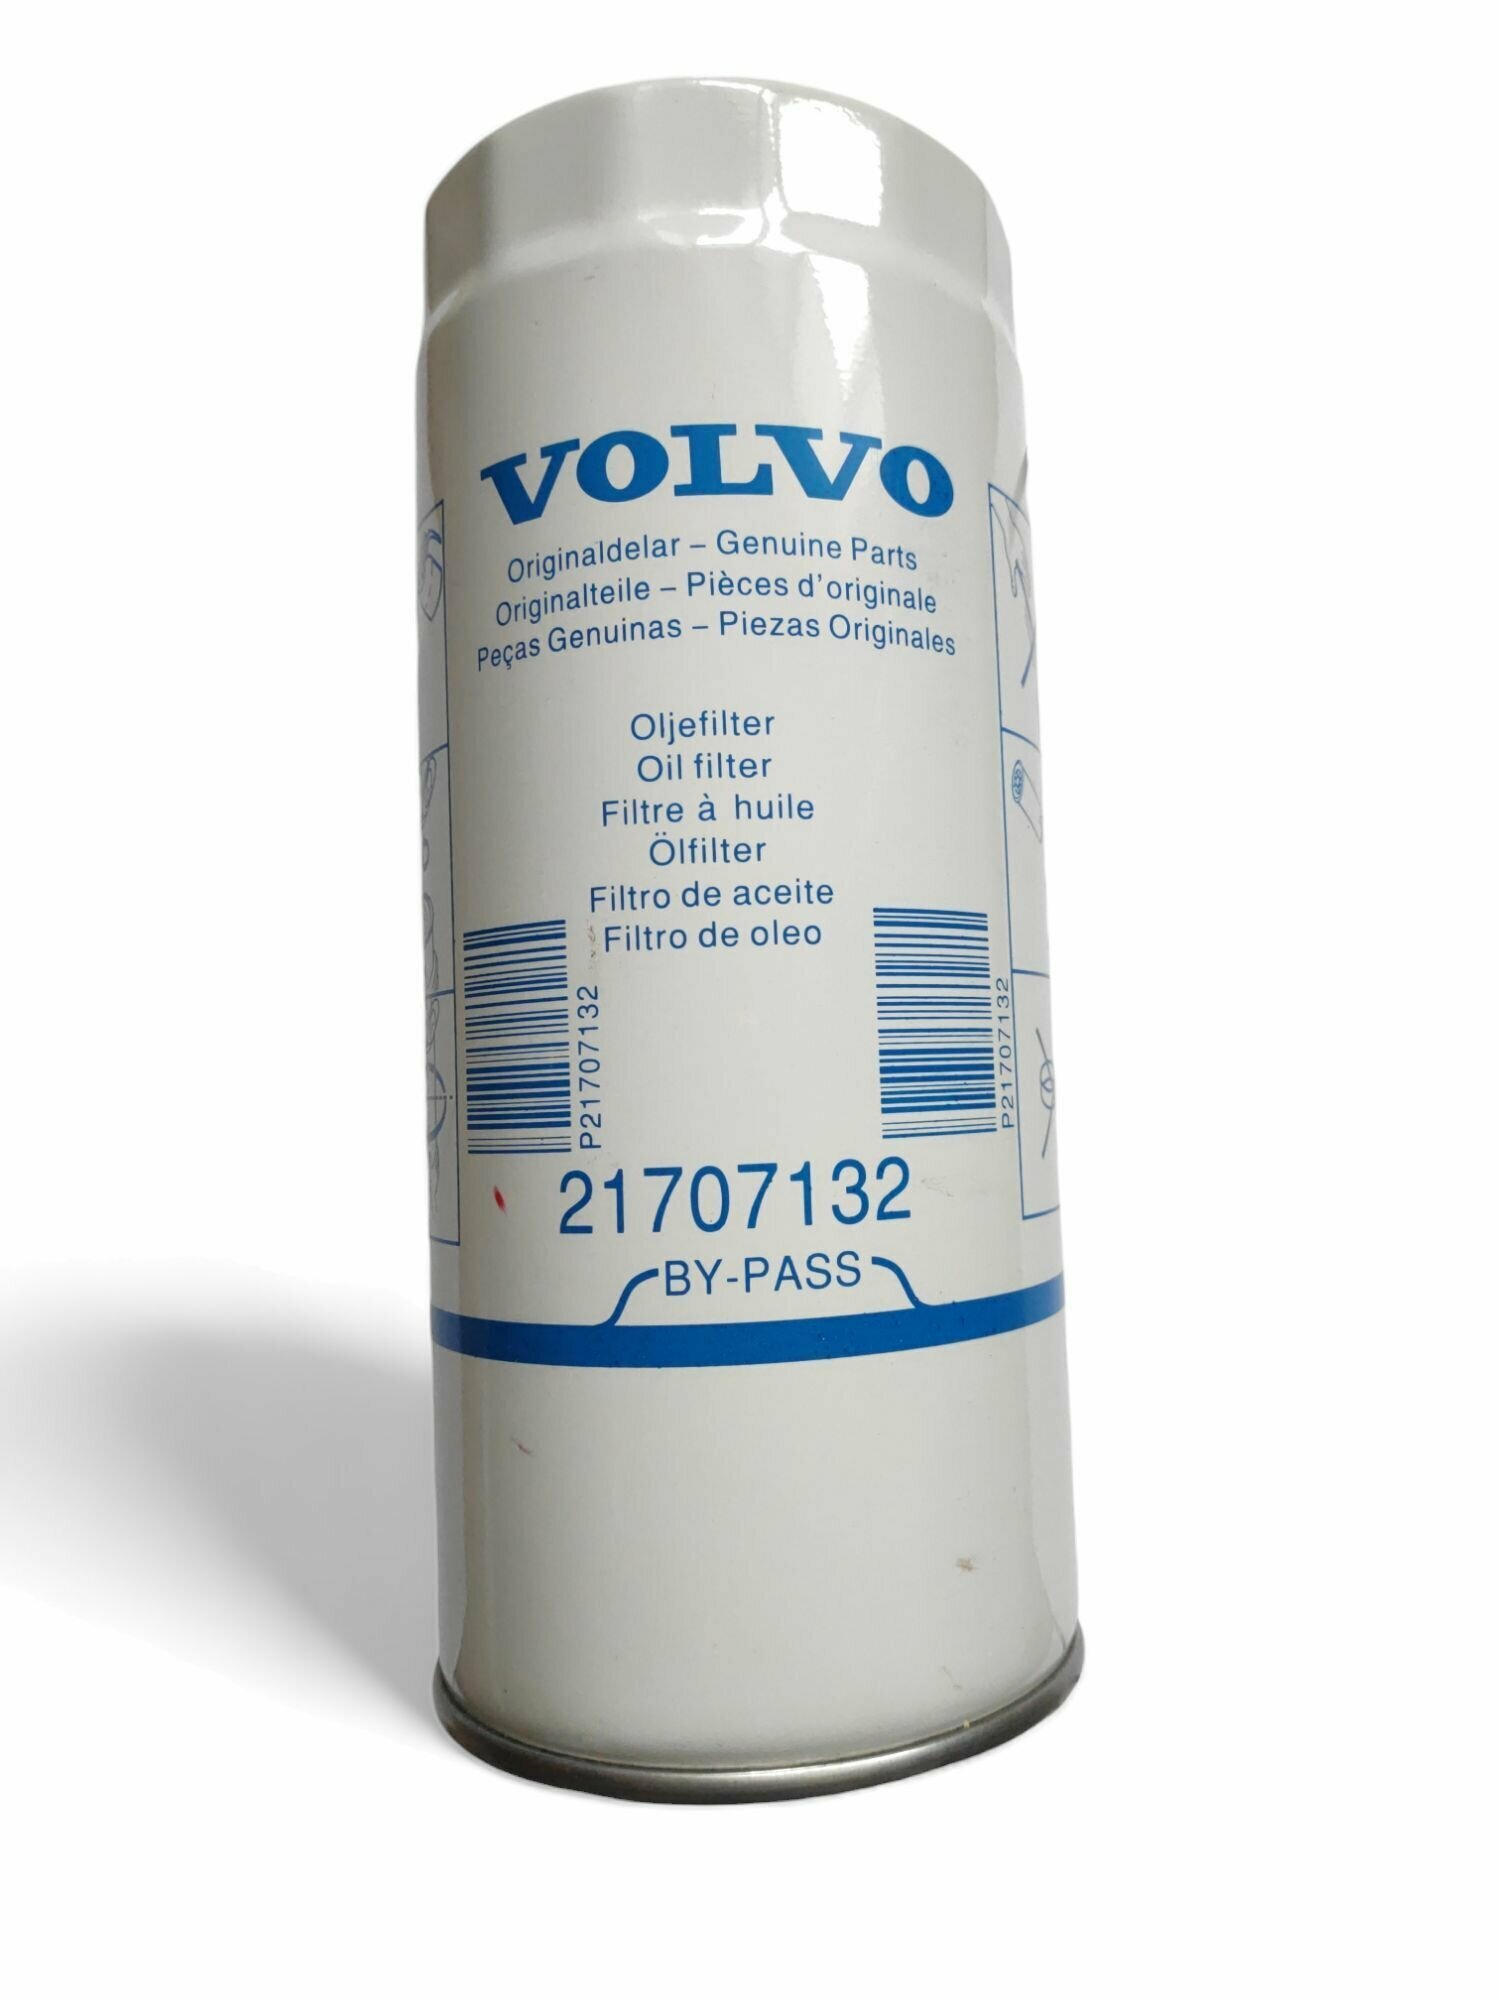 Фильтр масляный для Volvo Вольво, Renault Trucks / 21707132 / VOLVO BY-PASS